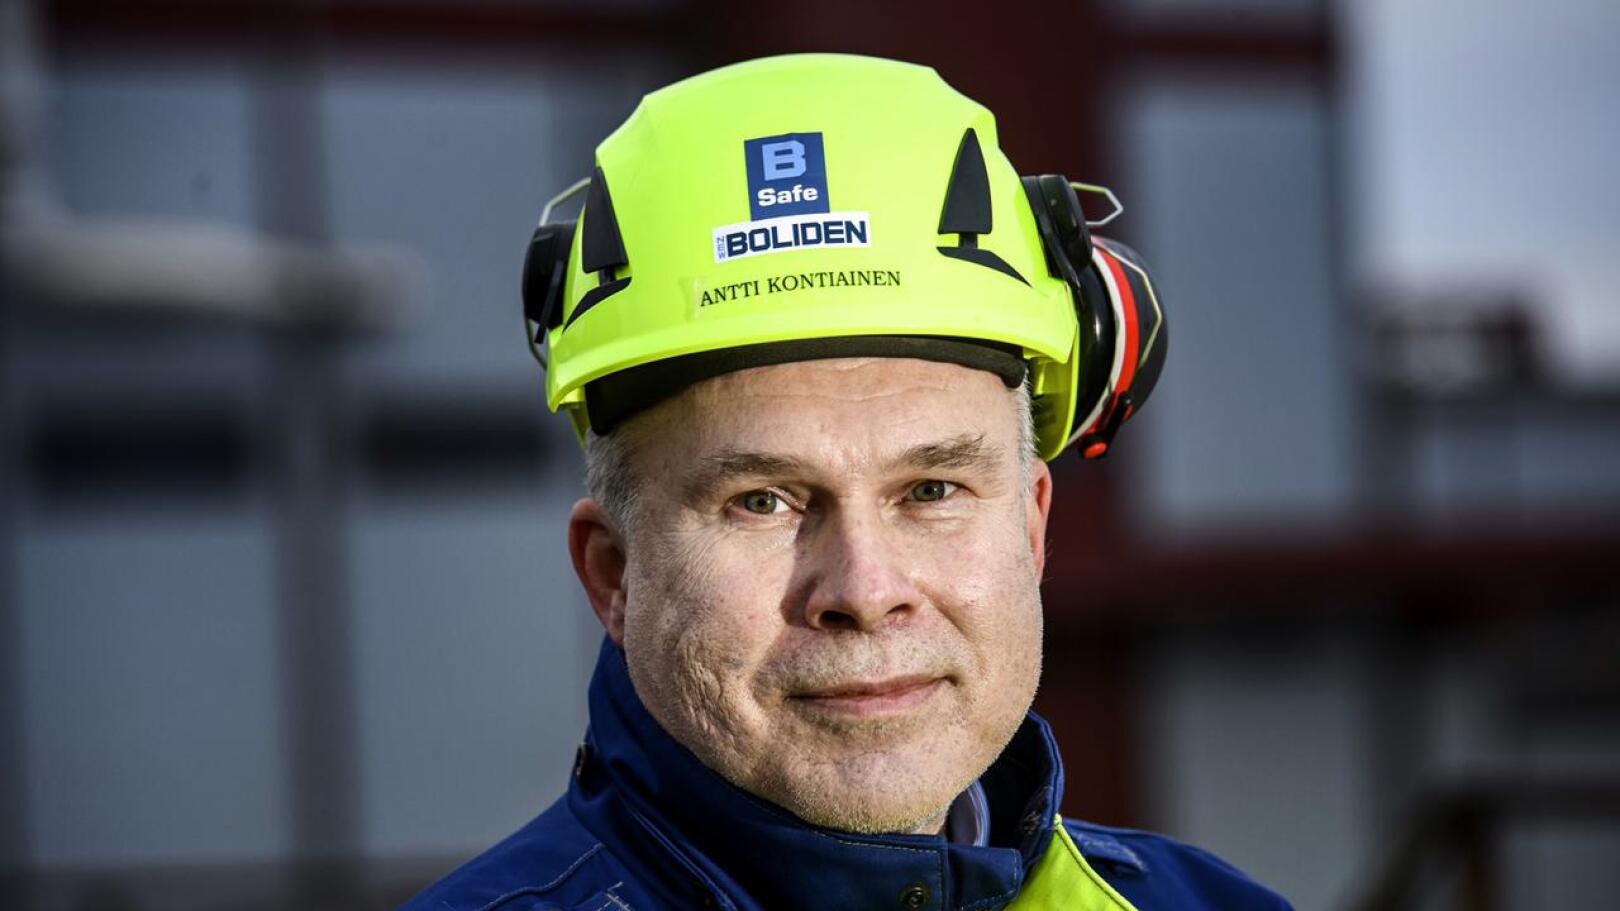 Boliden Kokkolan toimitusjohtaja Antti Kontiaisen mukaan AKT:n lakko ei vaikututa Bolidenin toimintaan toistaiseksi.